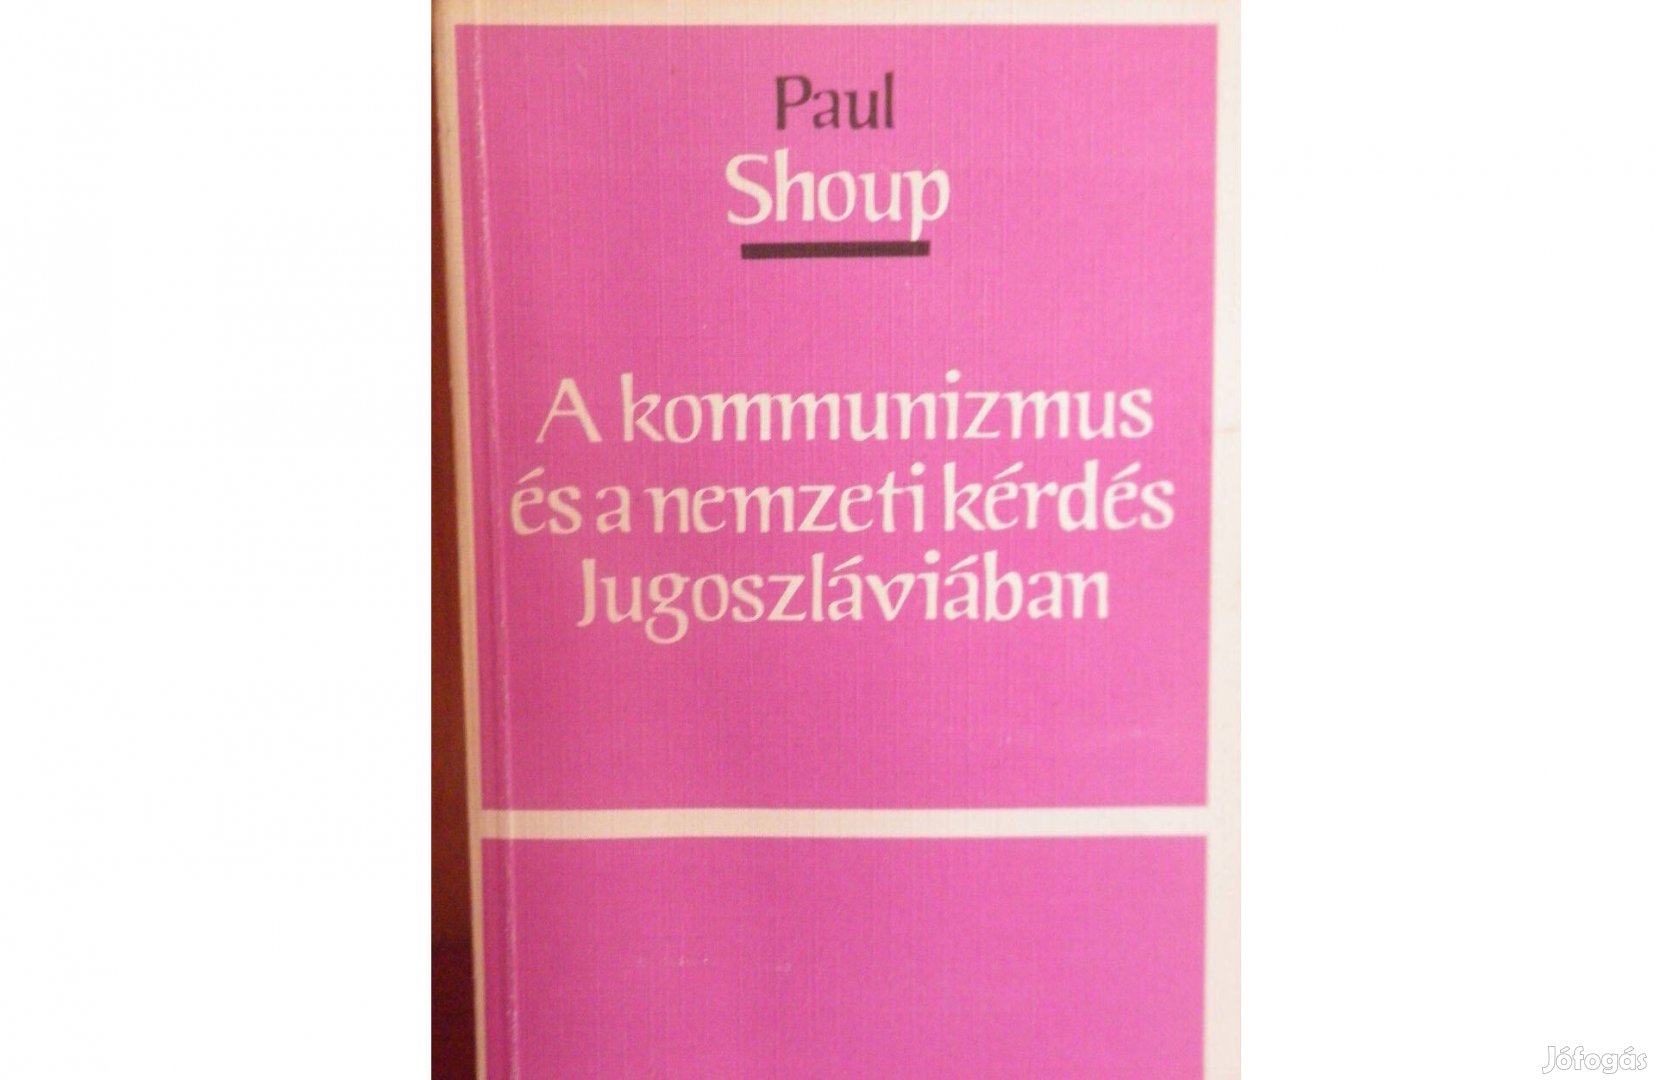 Paul Shoup: A kommunizmus és a nemzeti kérdés Jugoszláviában - sorsz